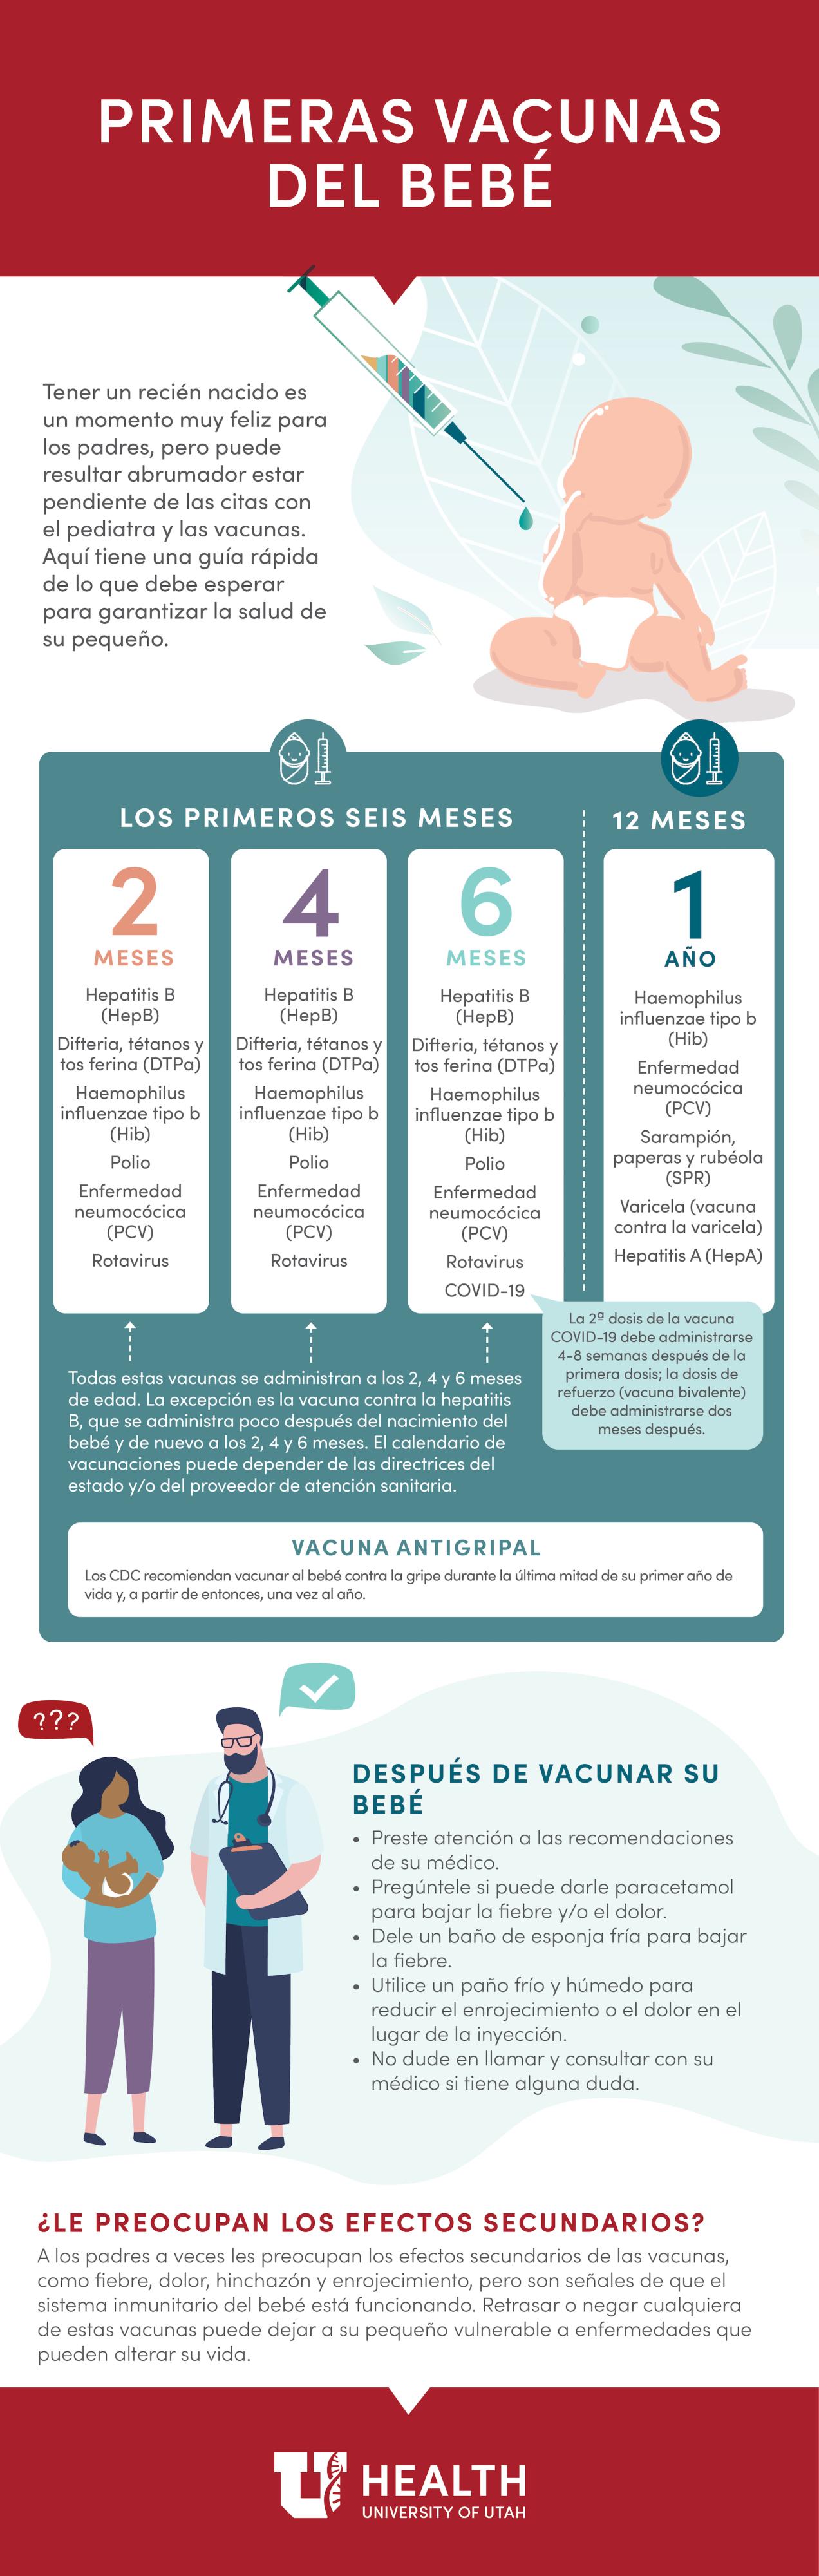 baby immunizations infographic